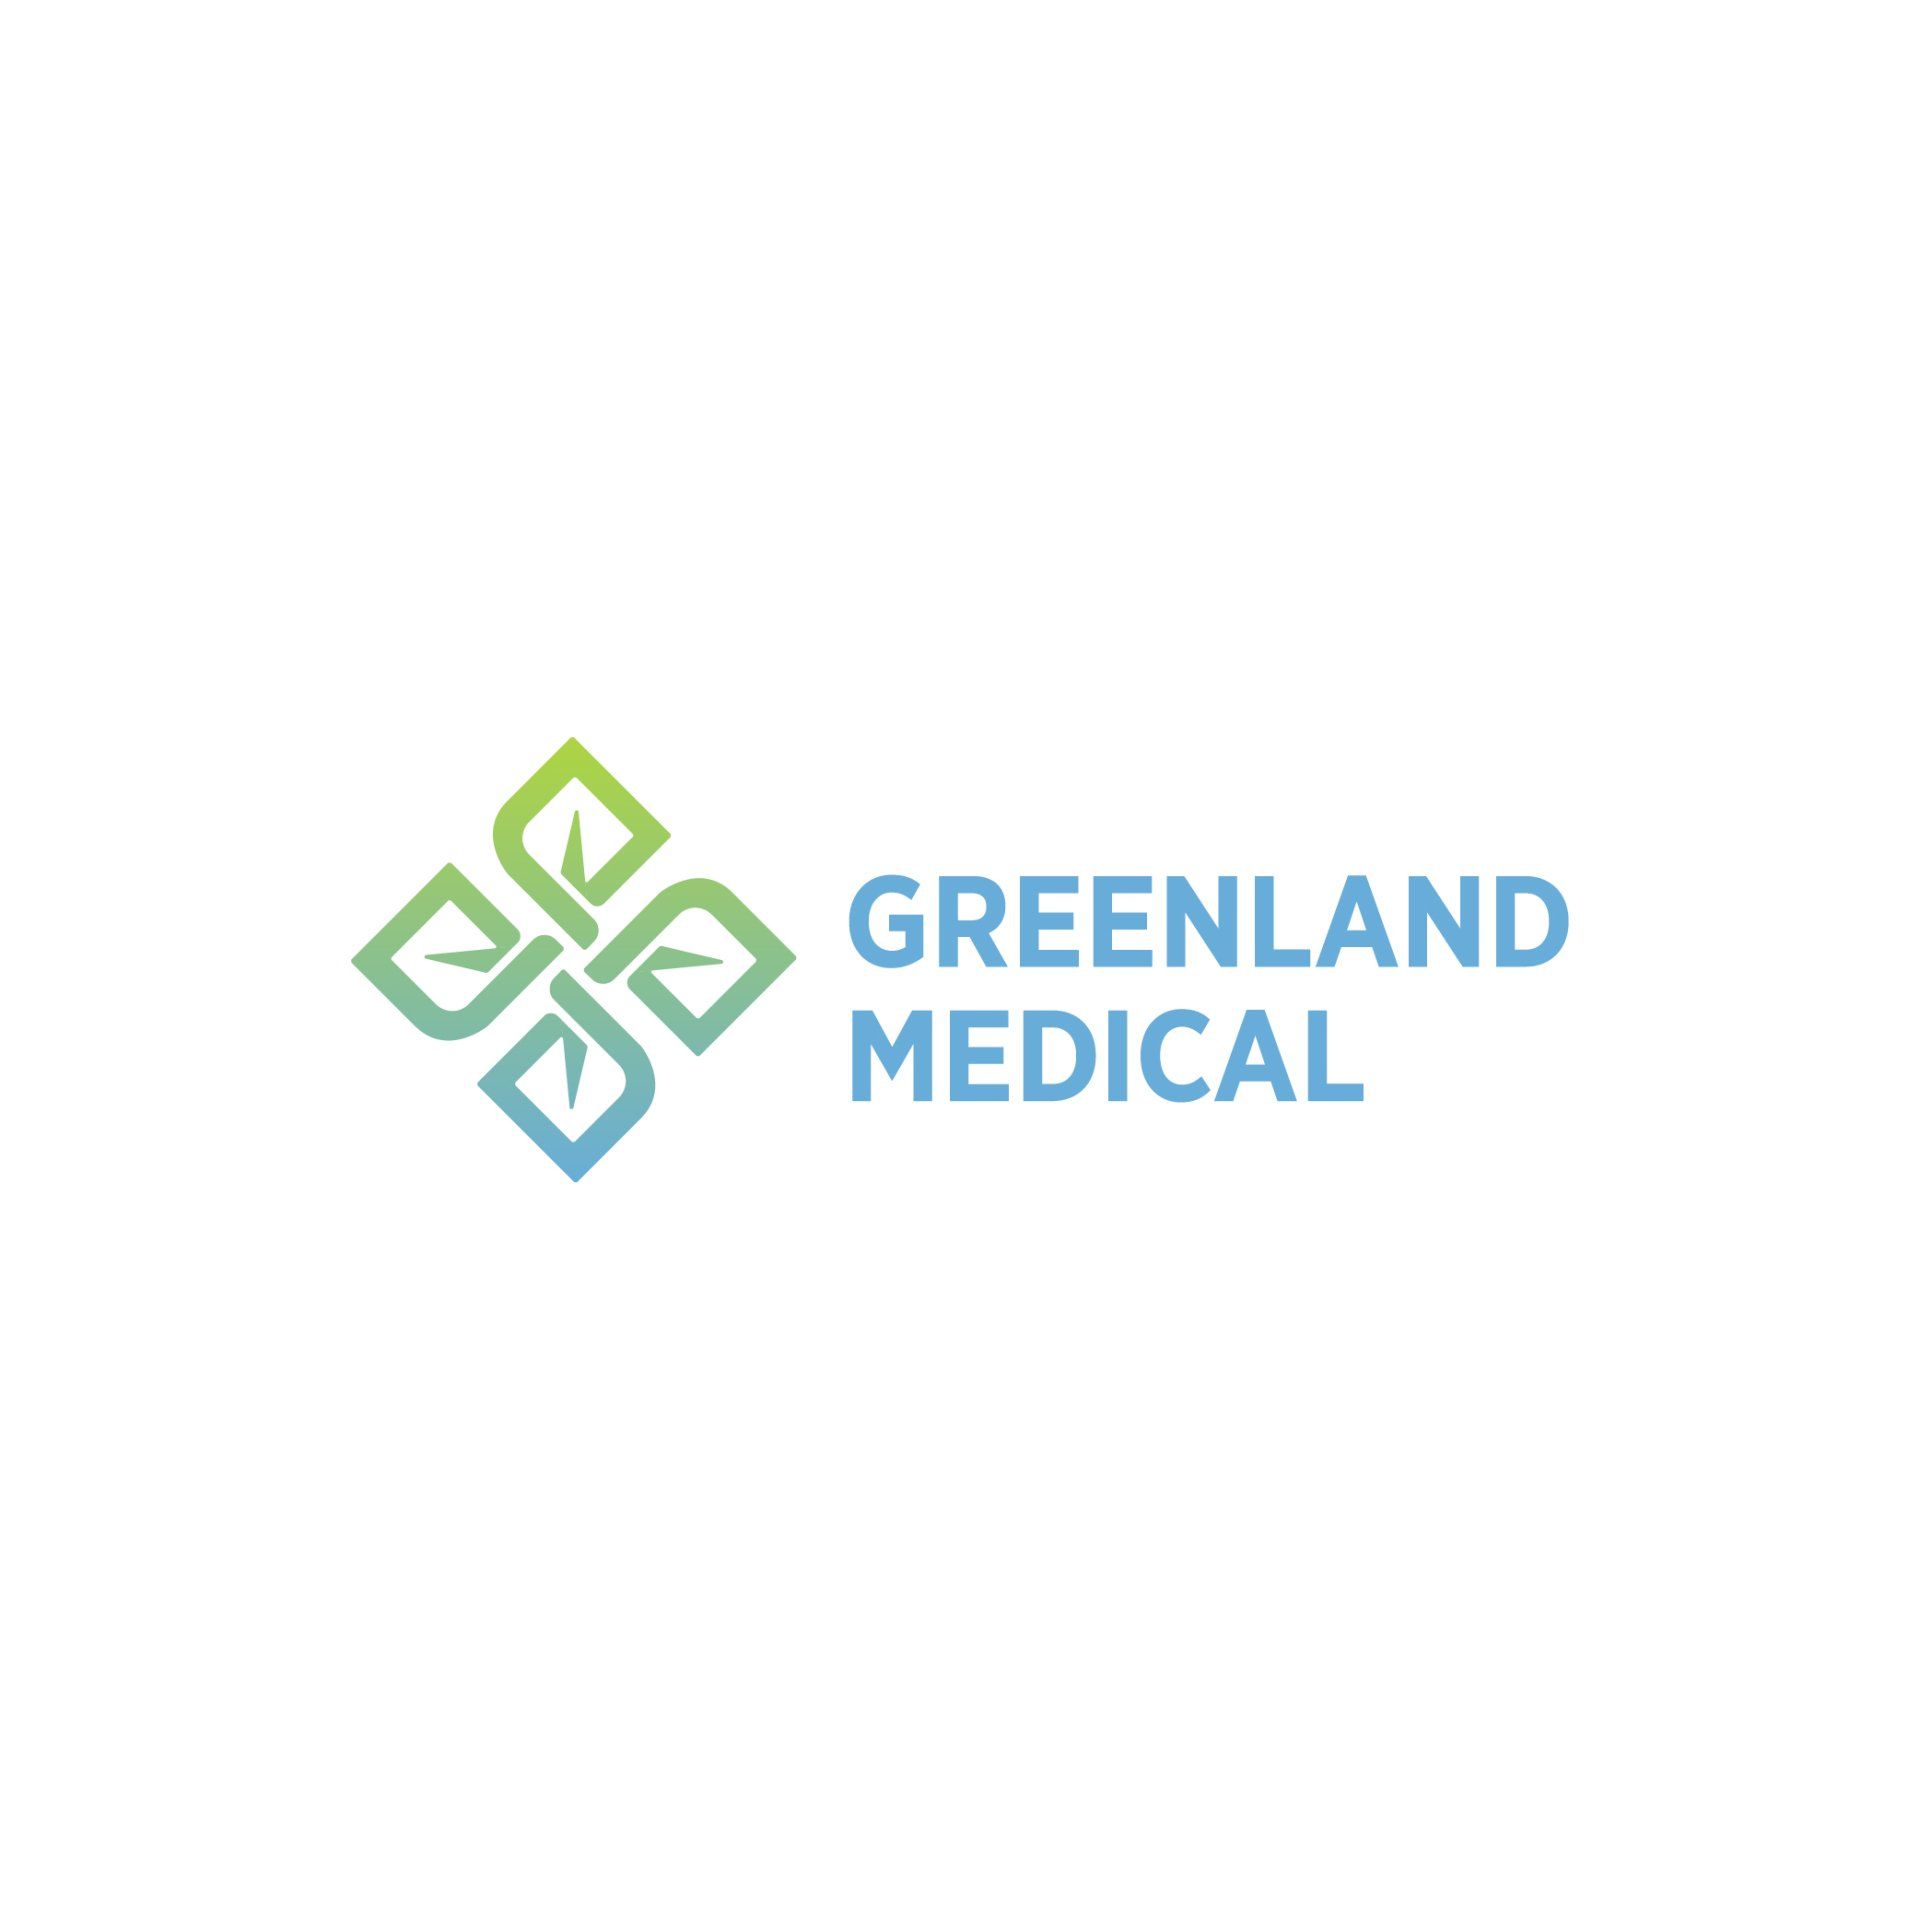 www.greenland-medical.com